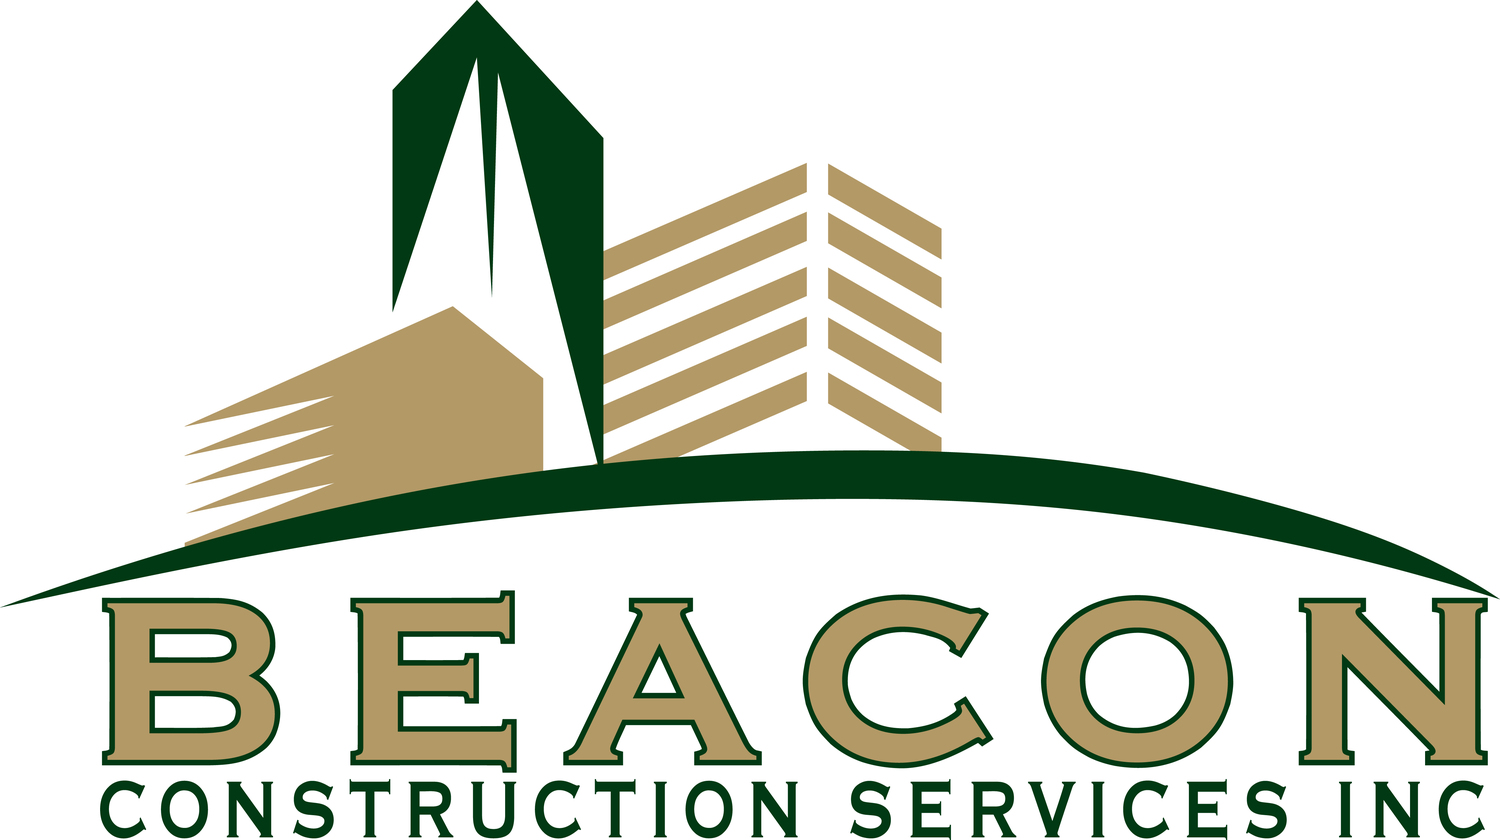 Beacon Construction Services